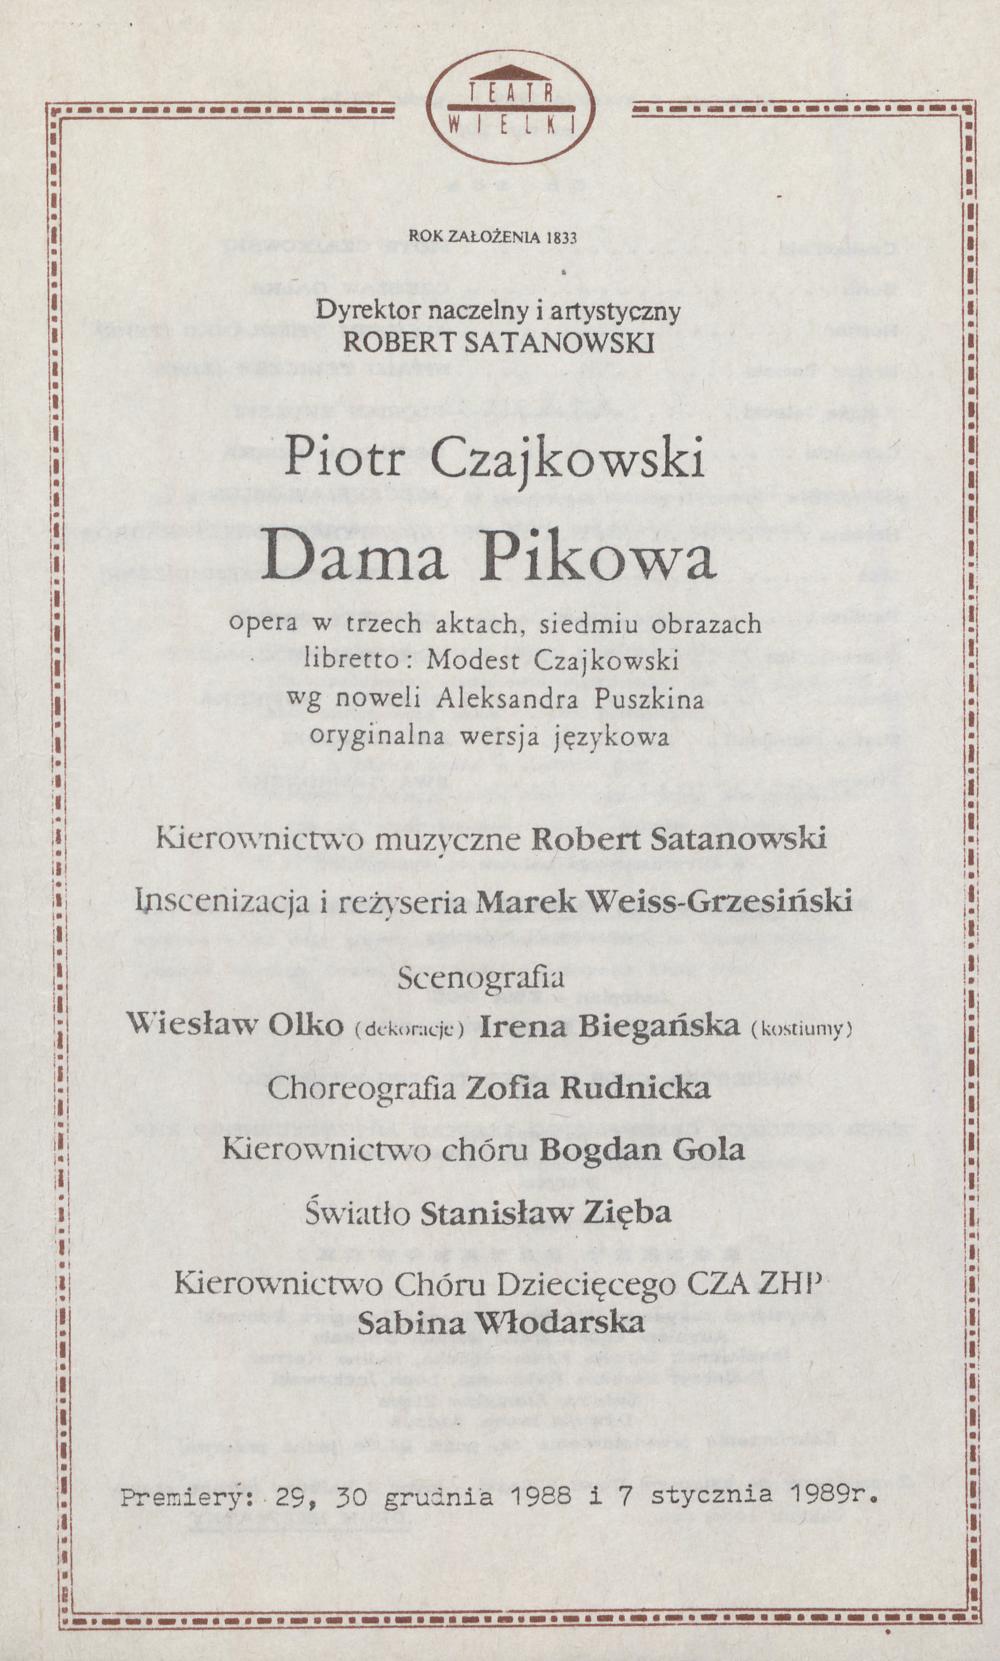 Wkładka obsadowa „Dama pikowa” Piotr Czajkowski 9-04-1989